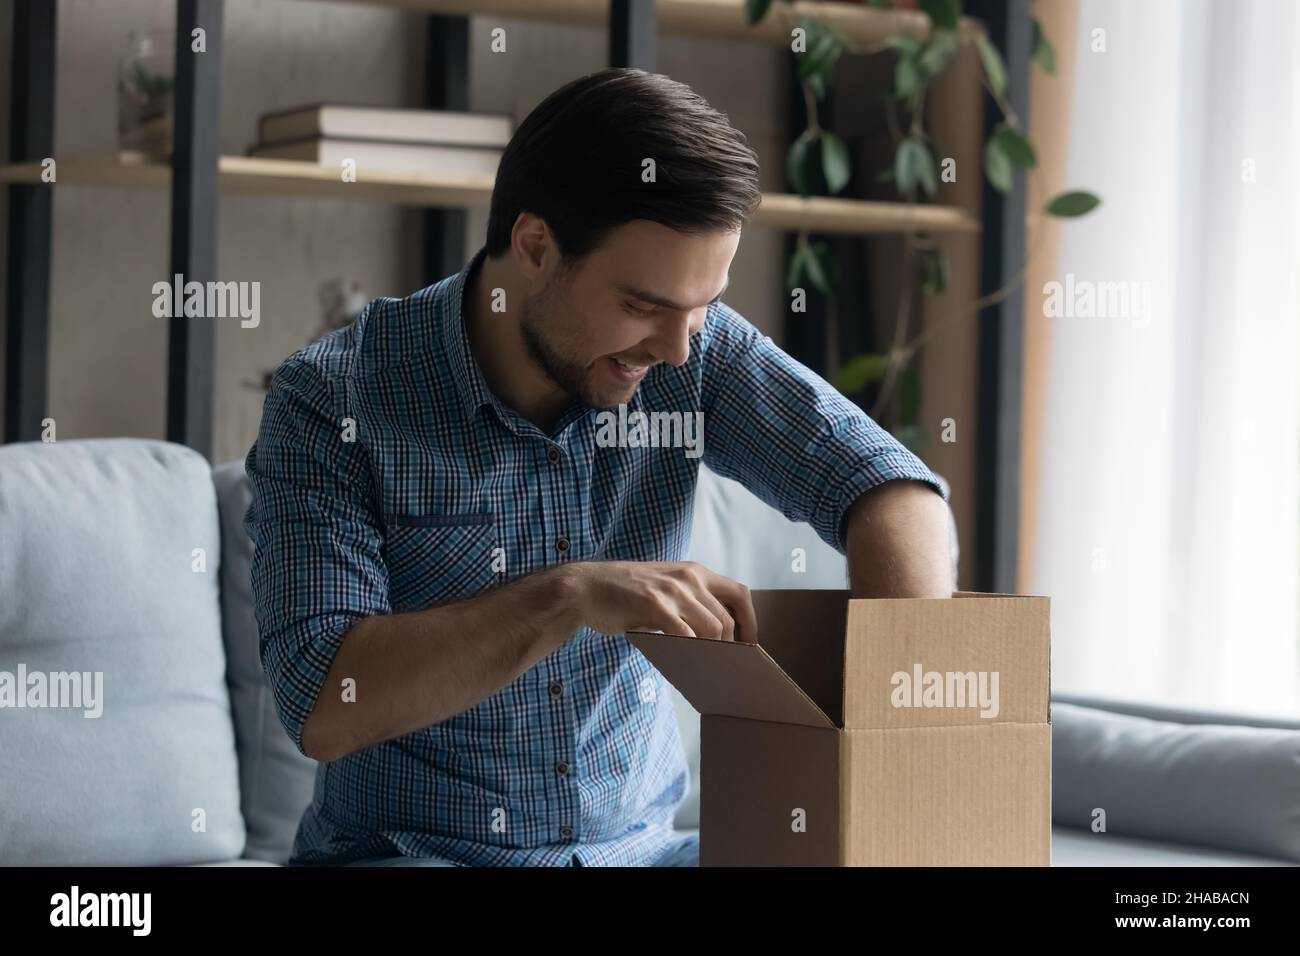 Der Mann, der das gelieferte Paket öffnet, fühlt sich mit dem Online-Kauf zufrieden Stockfoto